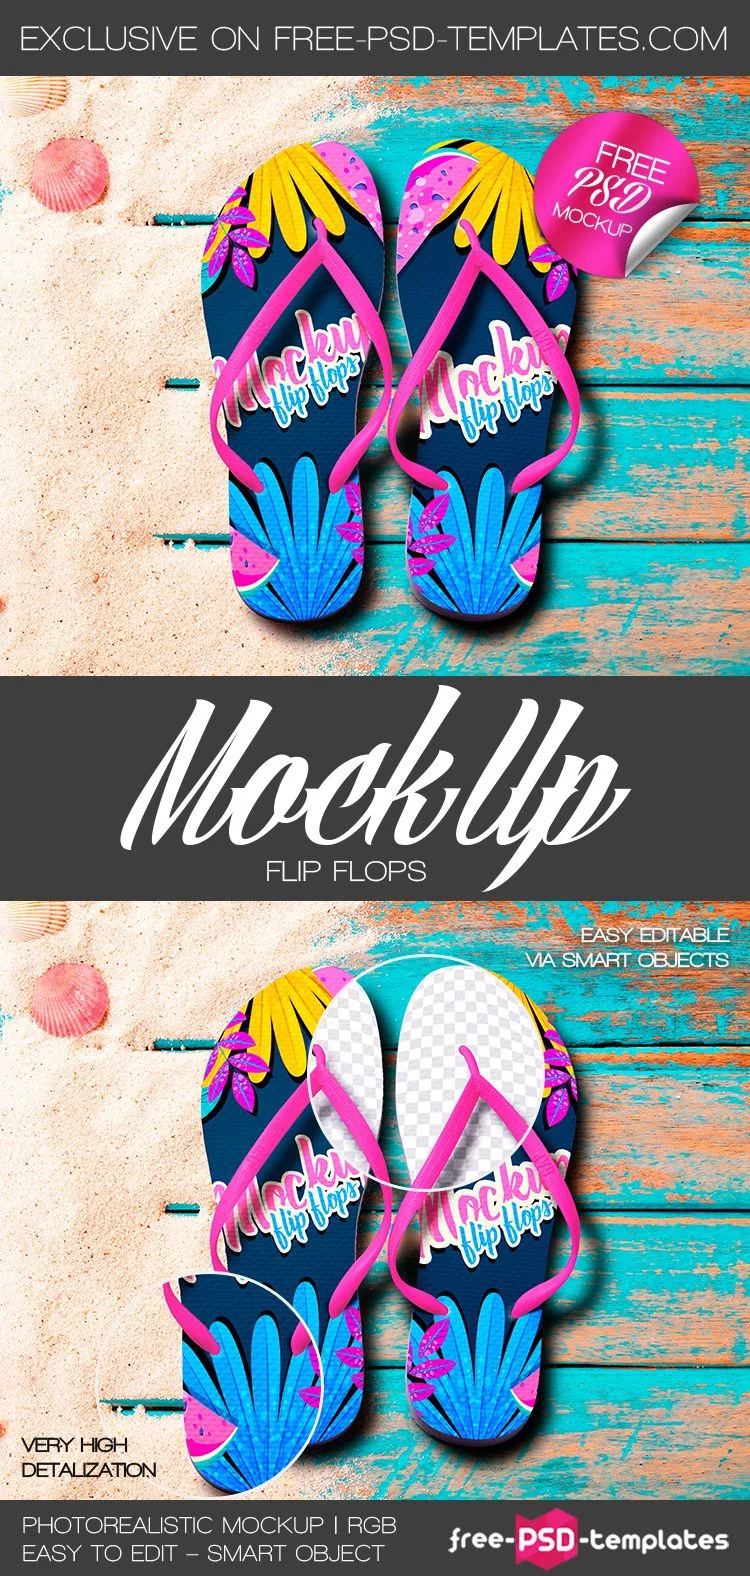 Free Flip Flops Mock-up in PSD